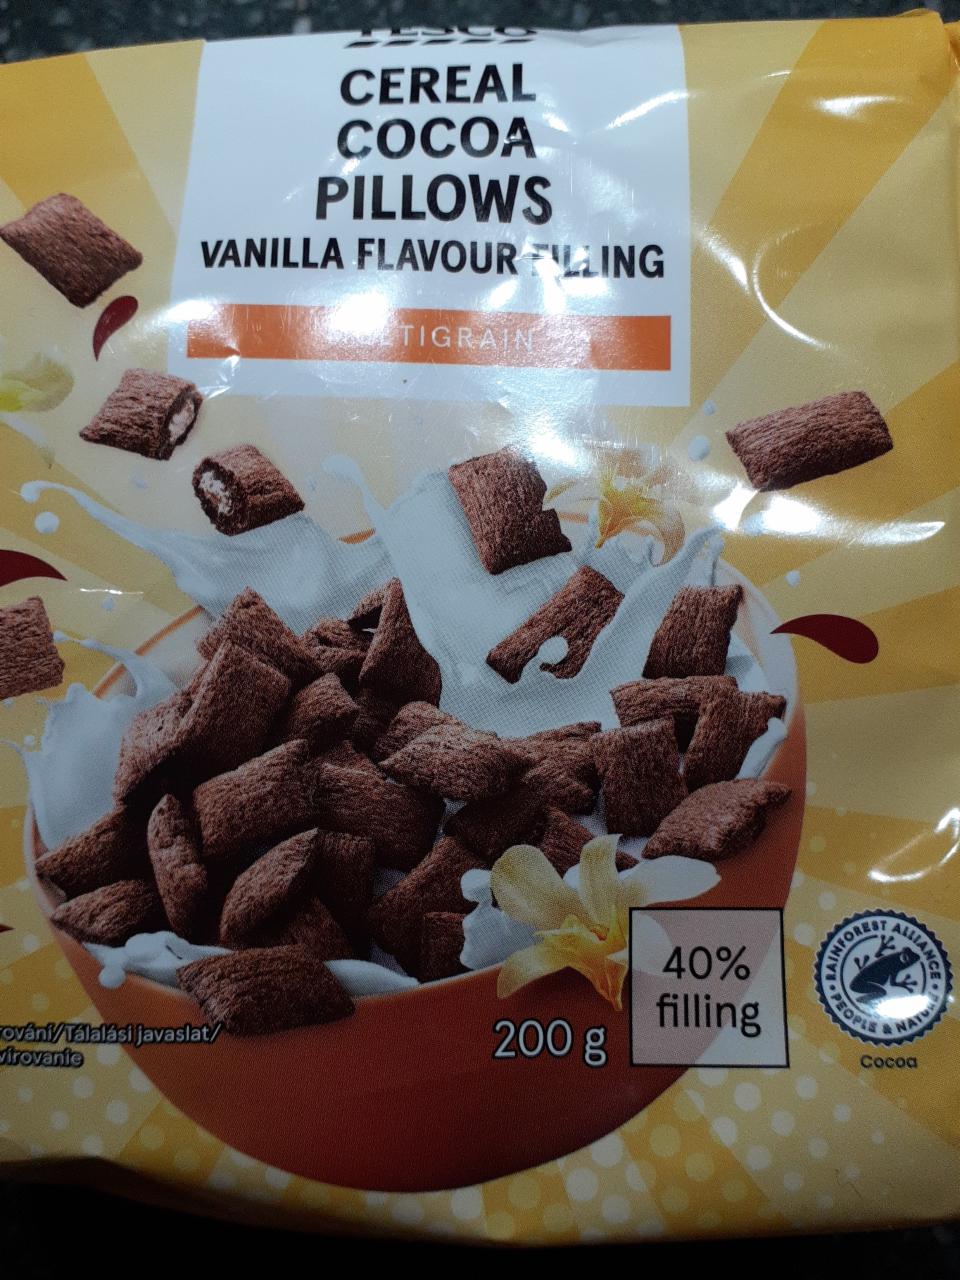 Képek - Cereal Cocoa Pillows Vanilla flavour filling Tesco